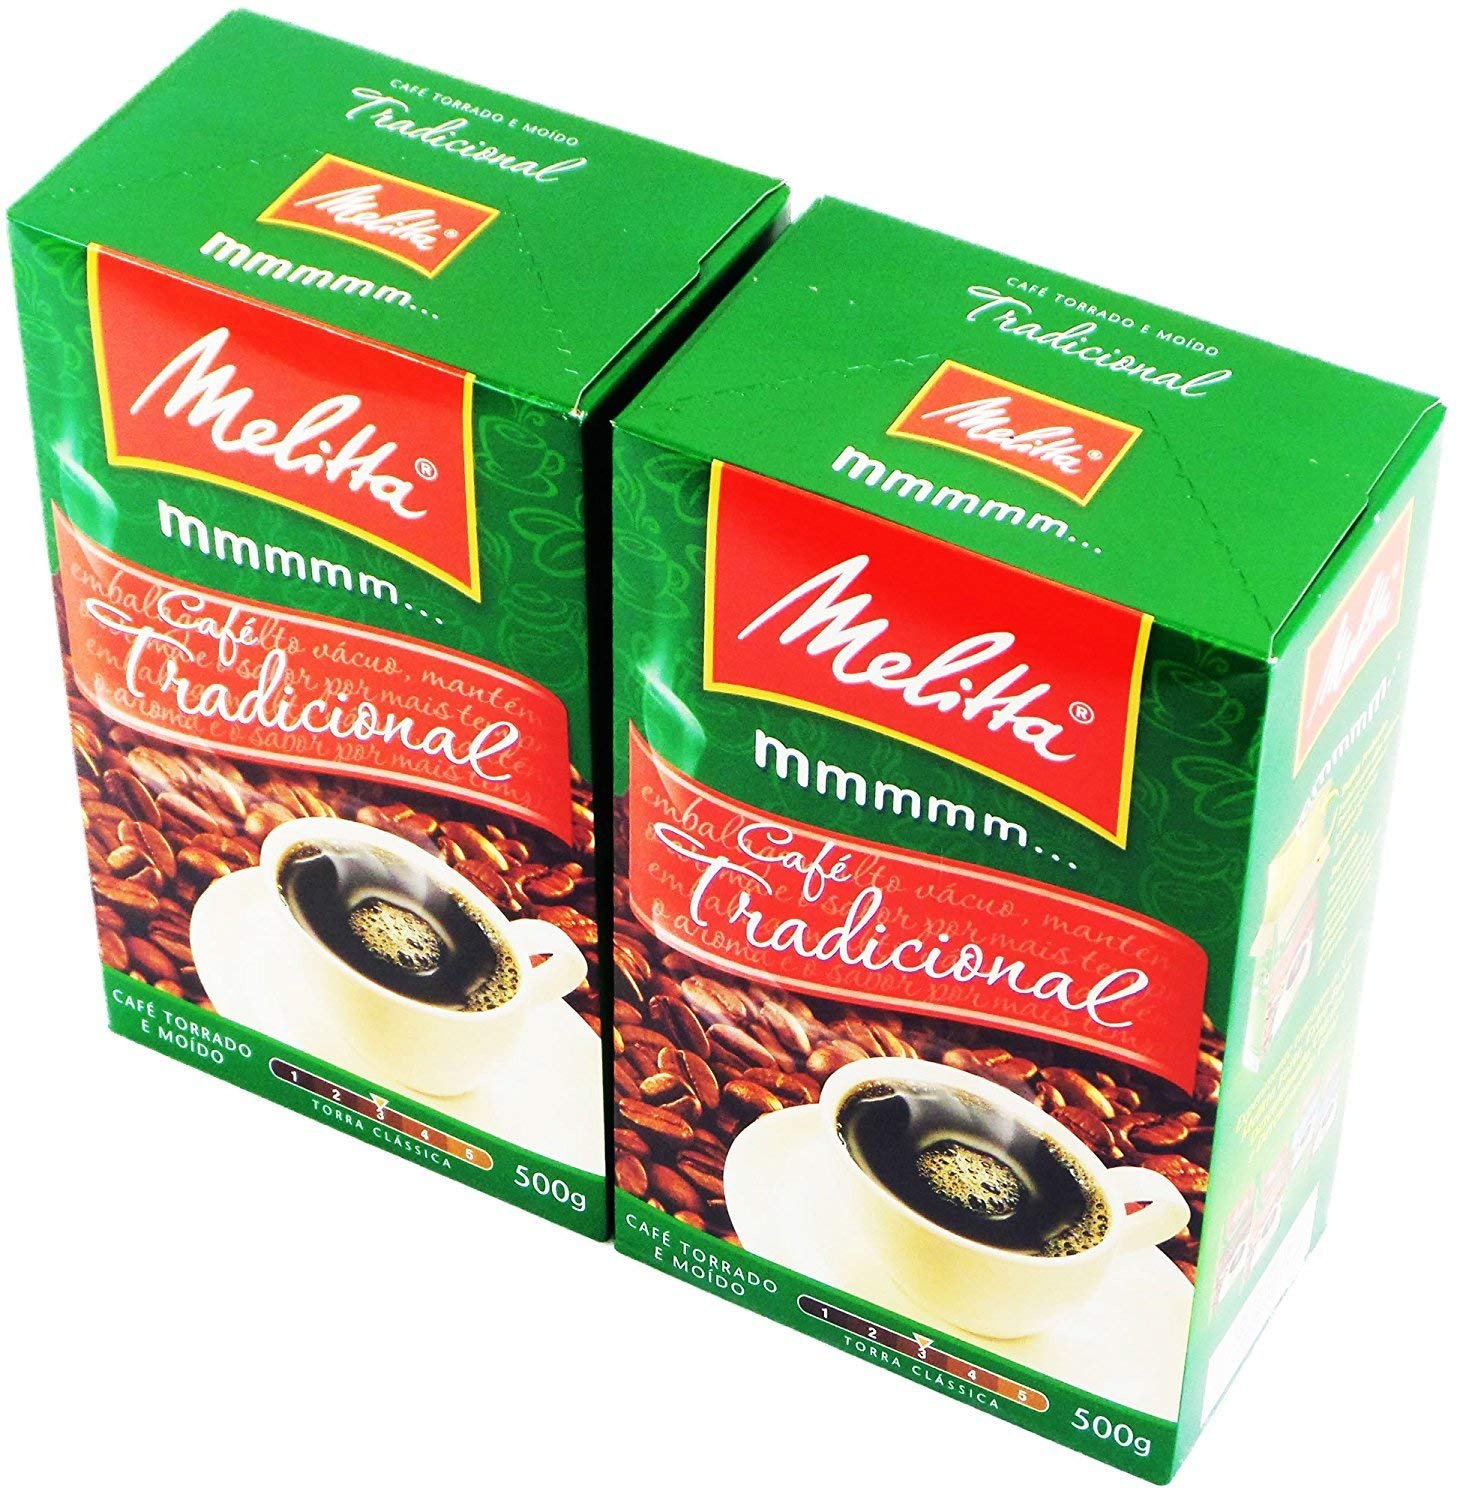 Melitta - Traditional Roasted Coffee -(PACK OF 02) | Melitta Café Torrado e Moído Tradicional